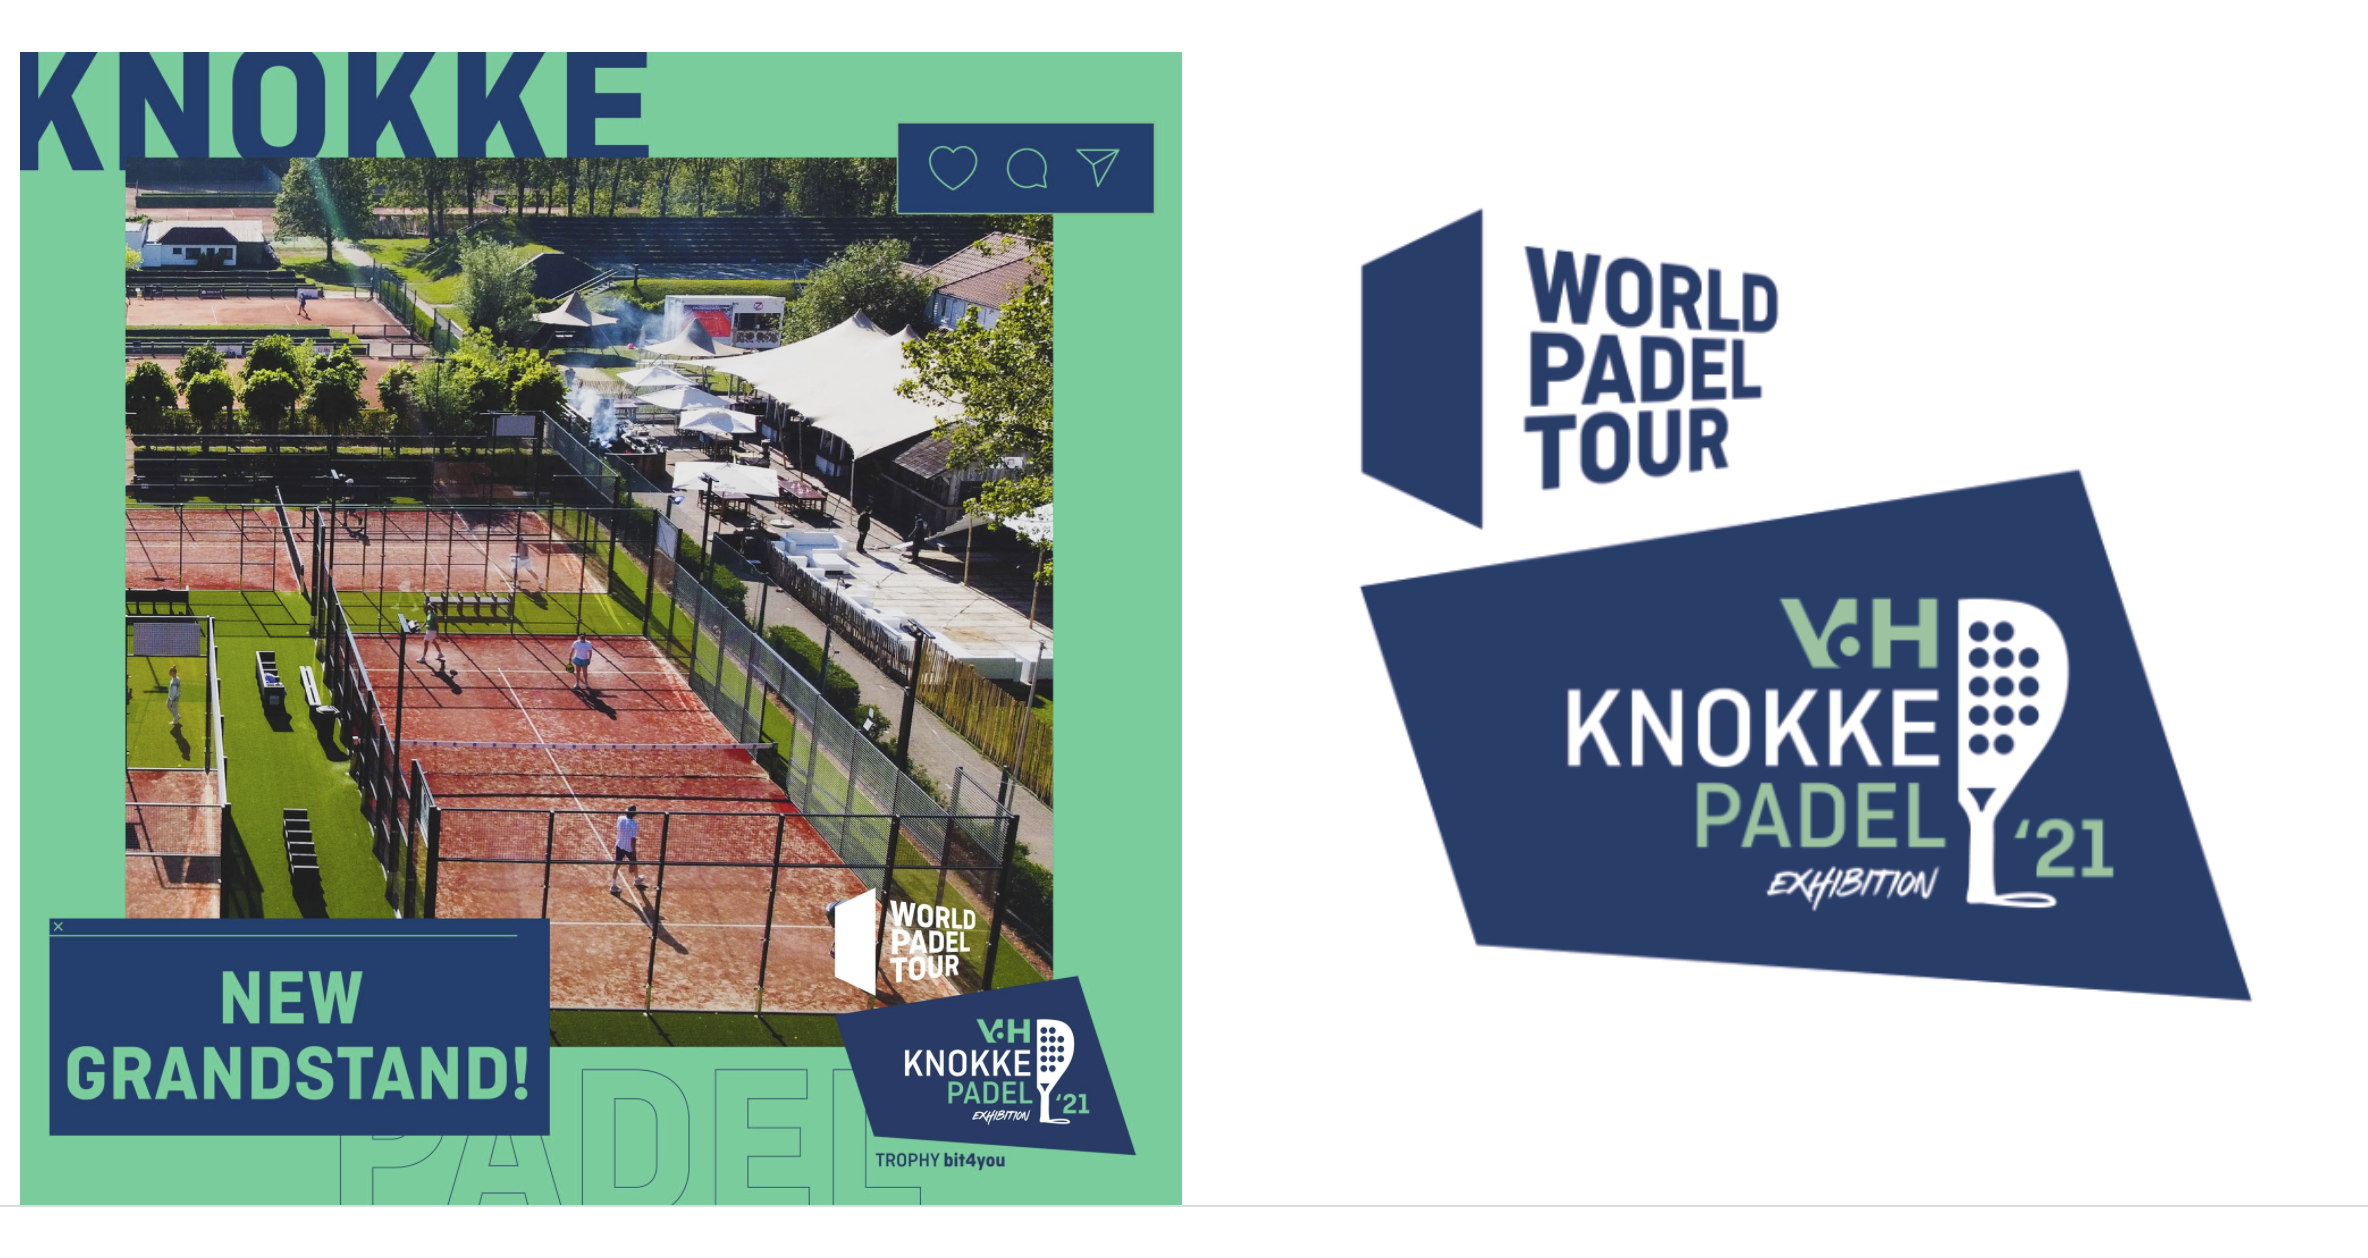 World Padel Tour Knokke 2021: to się dzieje!